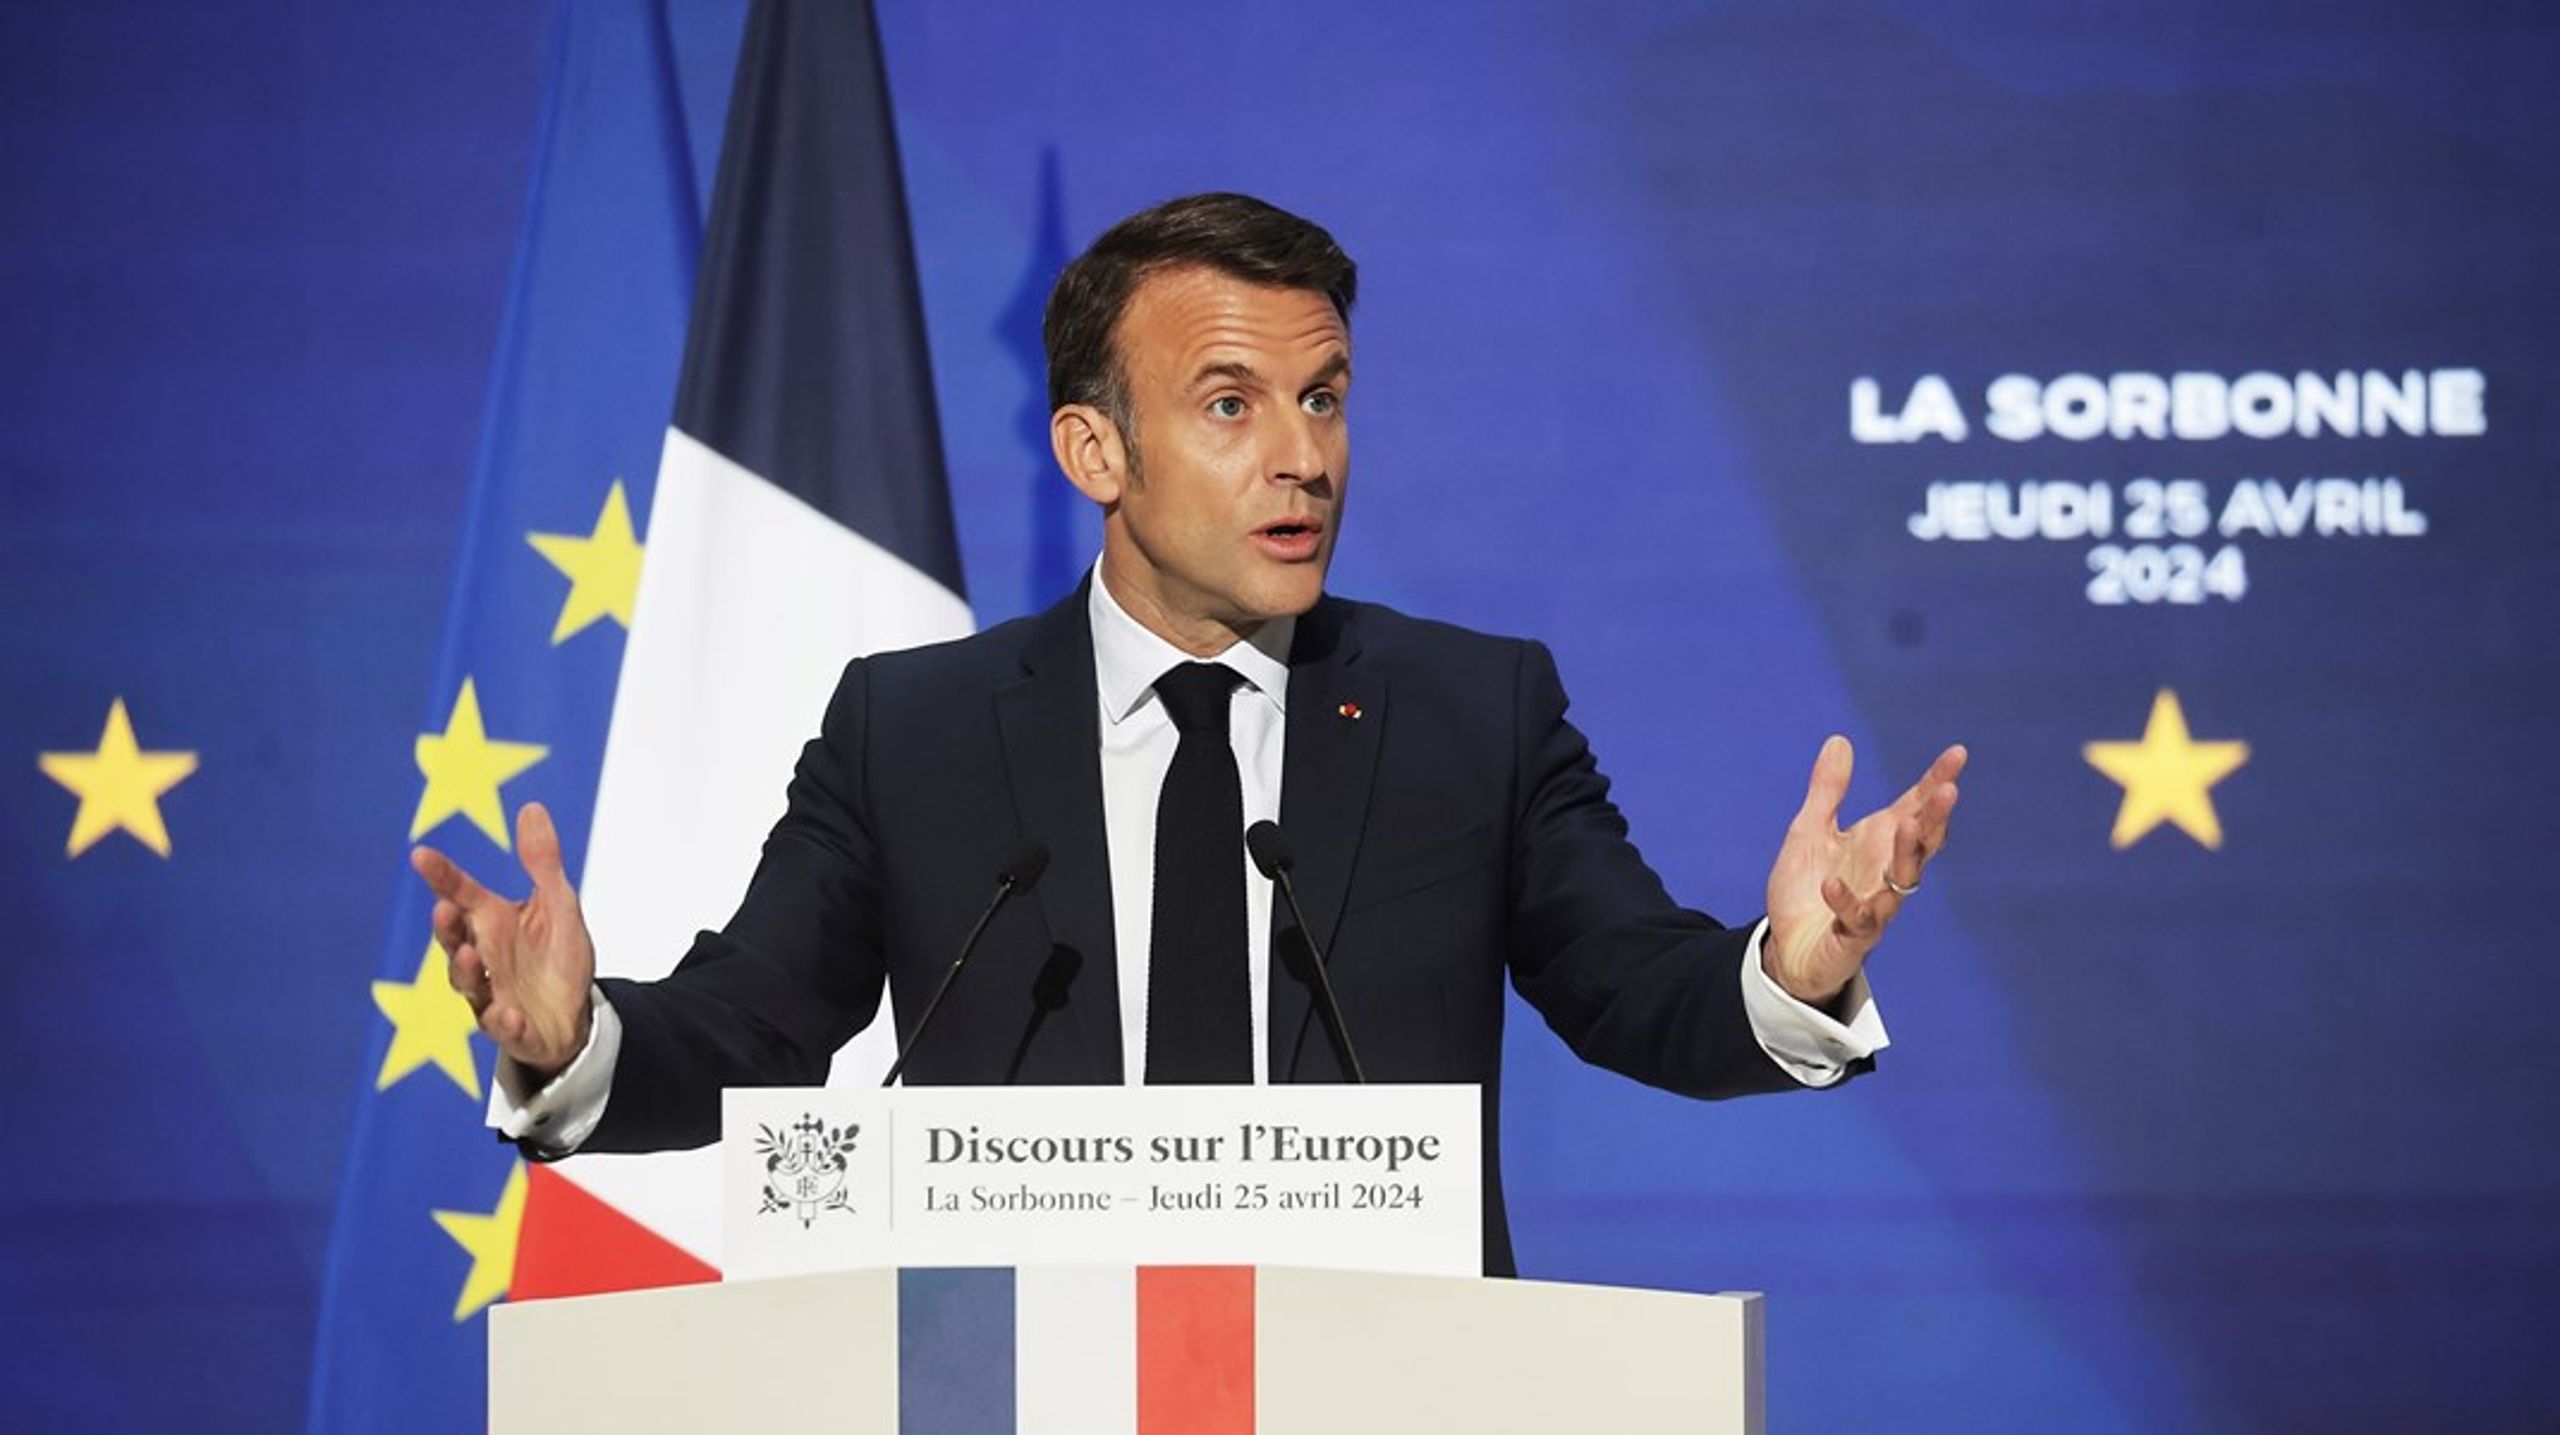 Den franske presidenten Emmanuel Macron står inför ett EU-val i juni, där opinionsmätningarna lovar en förkrossande seger för Marine Le Pens högernationalister.